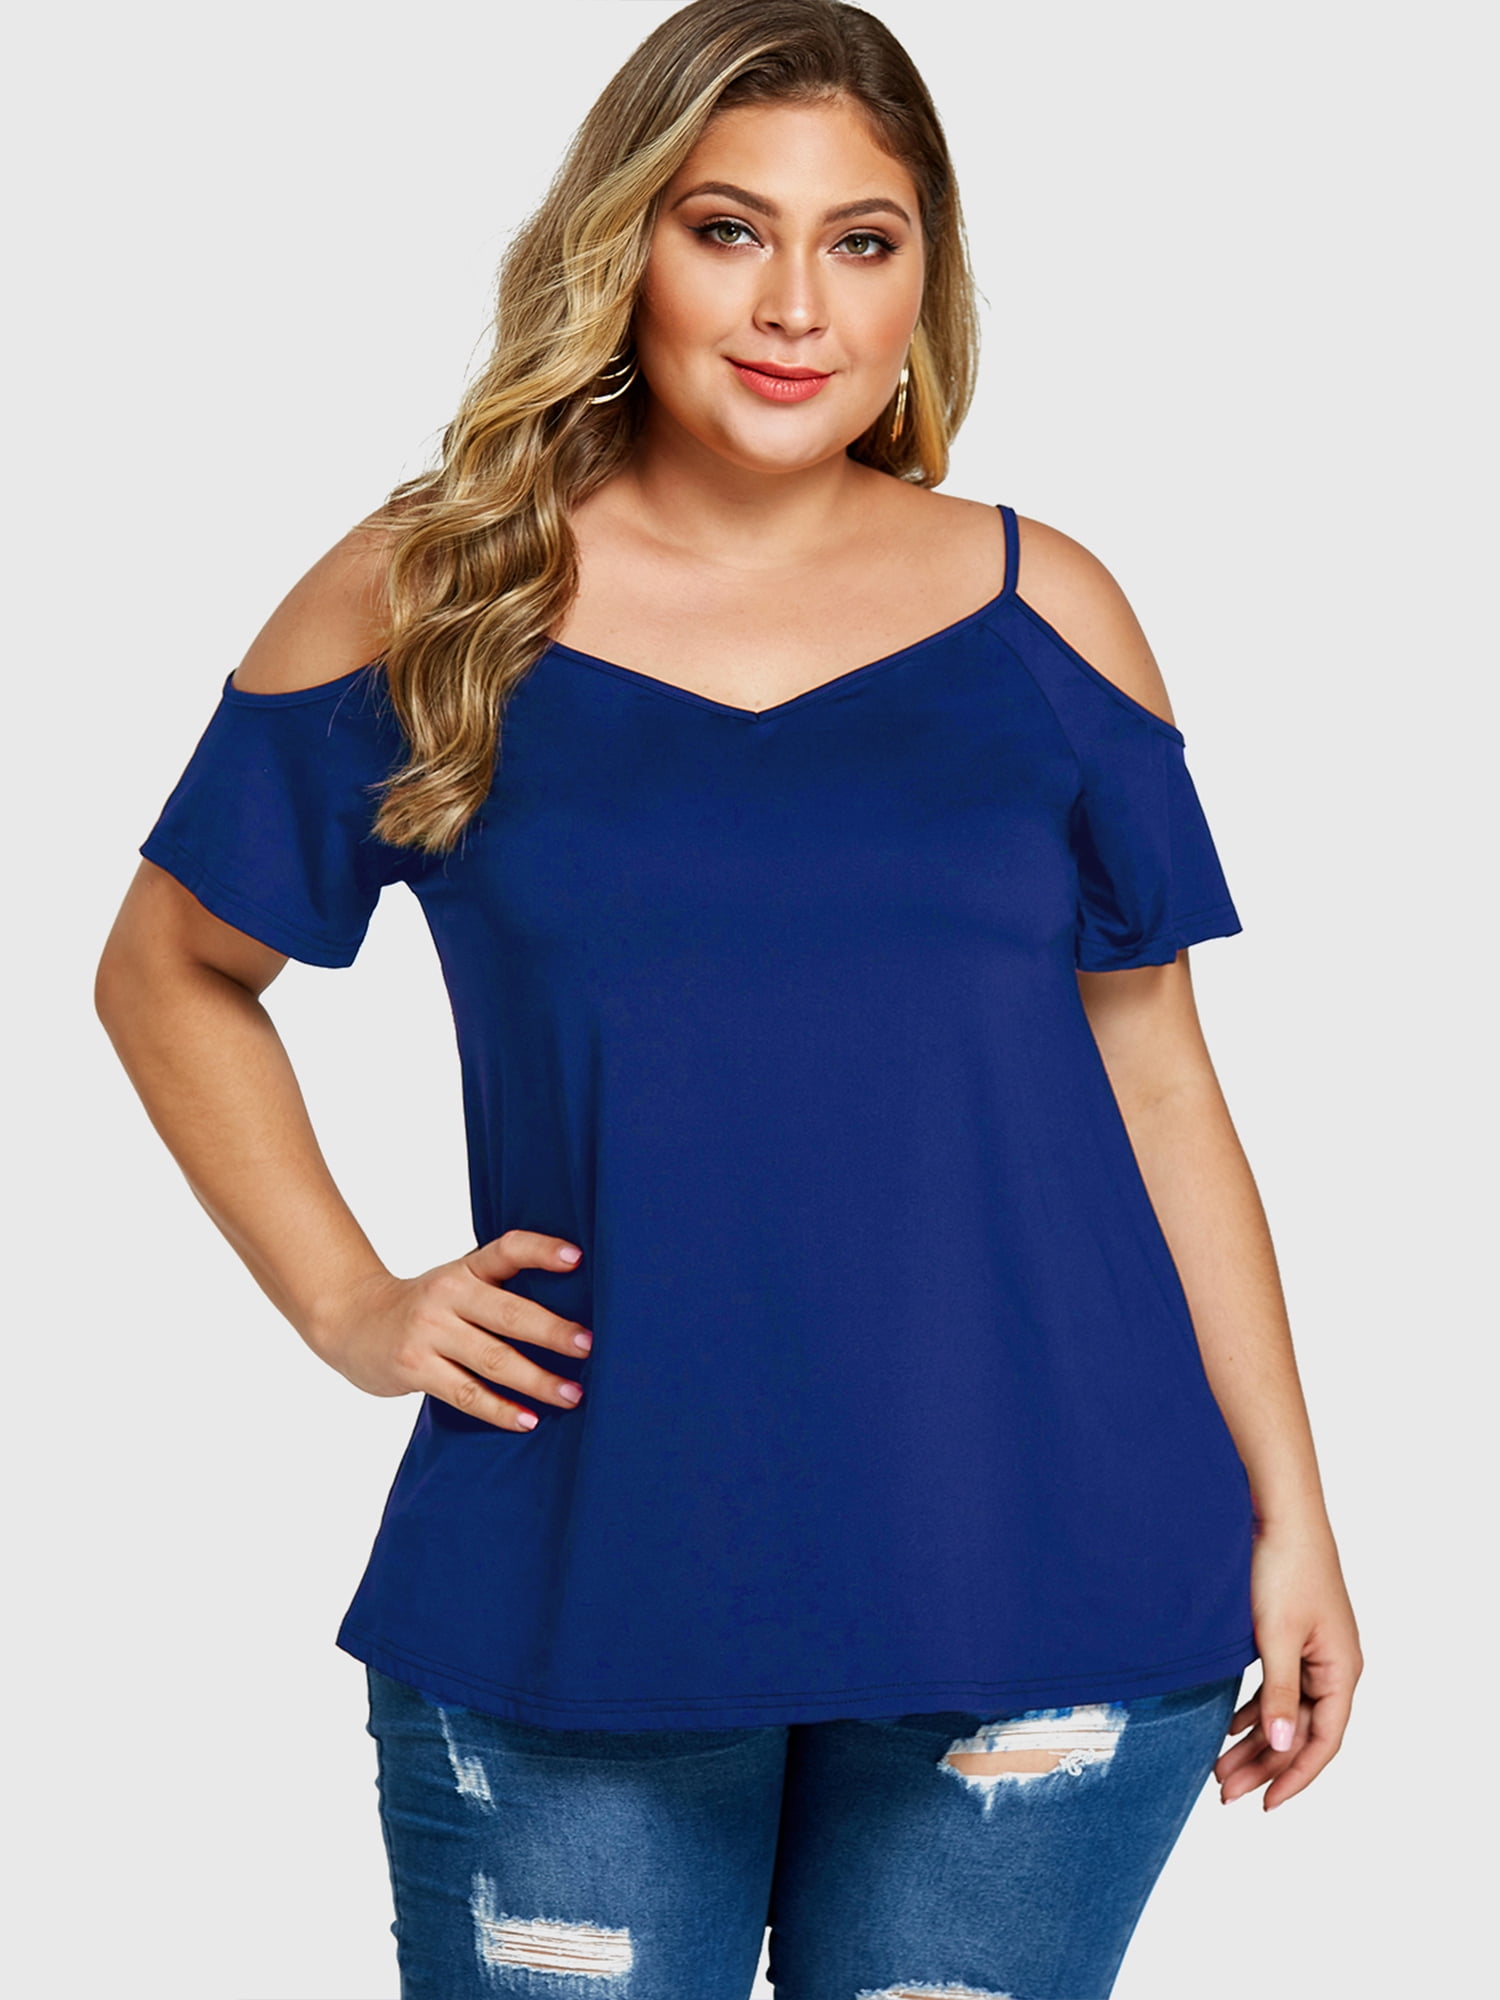 Chama Short Sleeve Off Shoulder Shirts for Women Size V Neck Cold Shoulder Tunic Tops Blouses Walmart.com